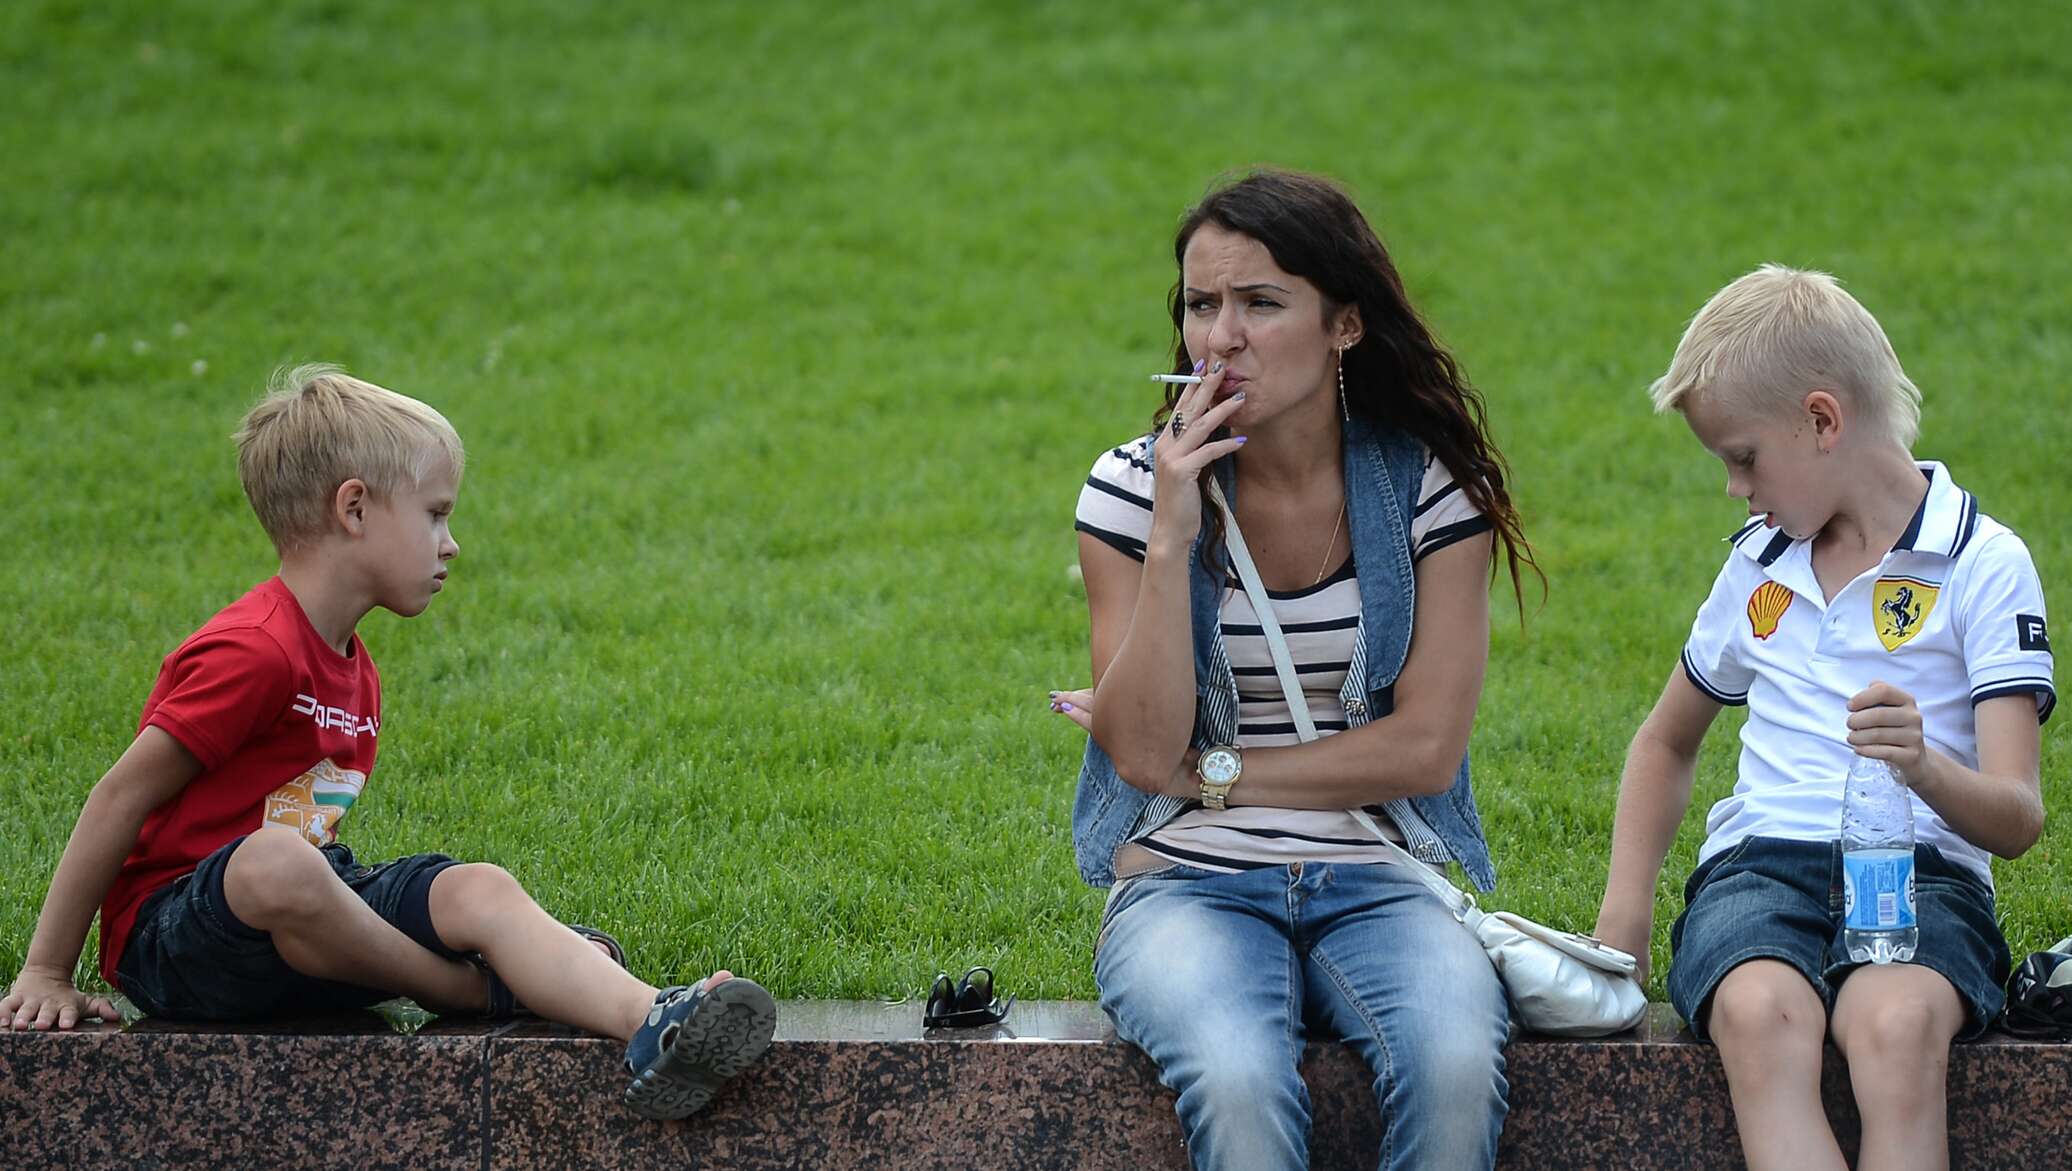 Курящая мама курящая дочка. Курящая мама с ребенком. Курение рядом с детьми. Родители с детьми на детской площадке.